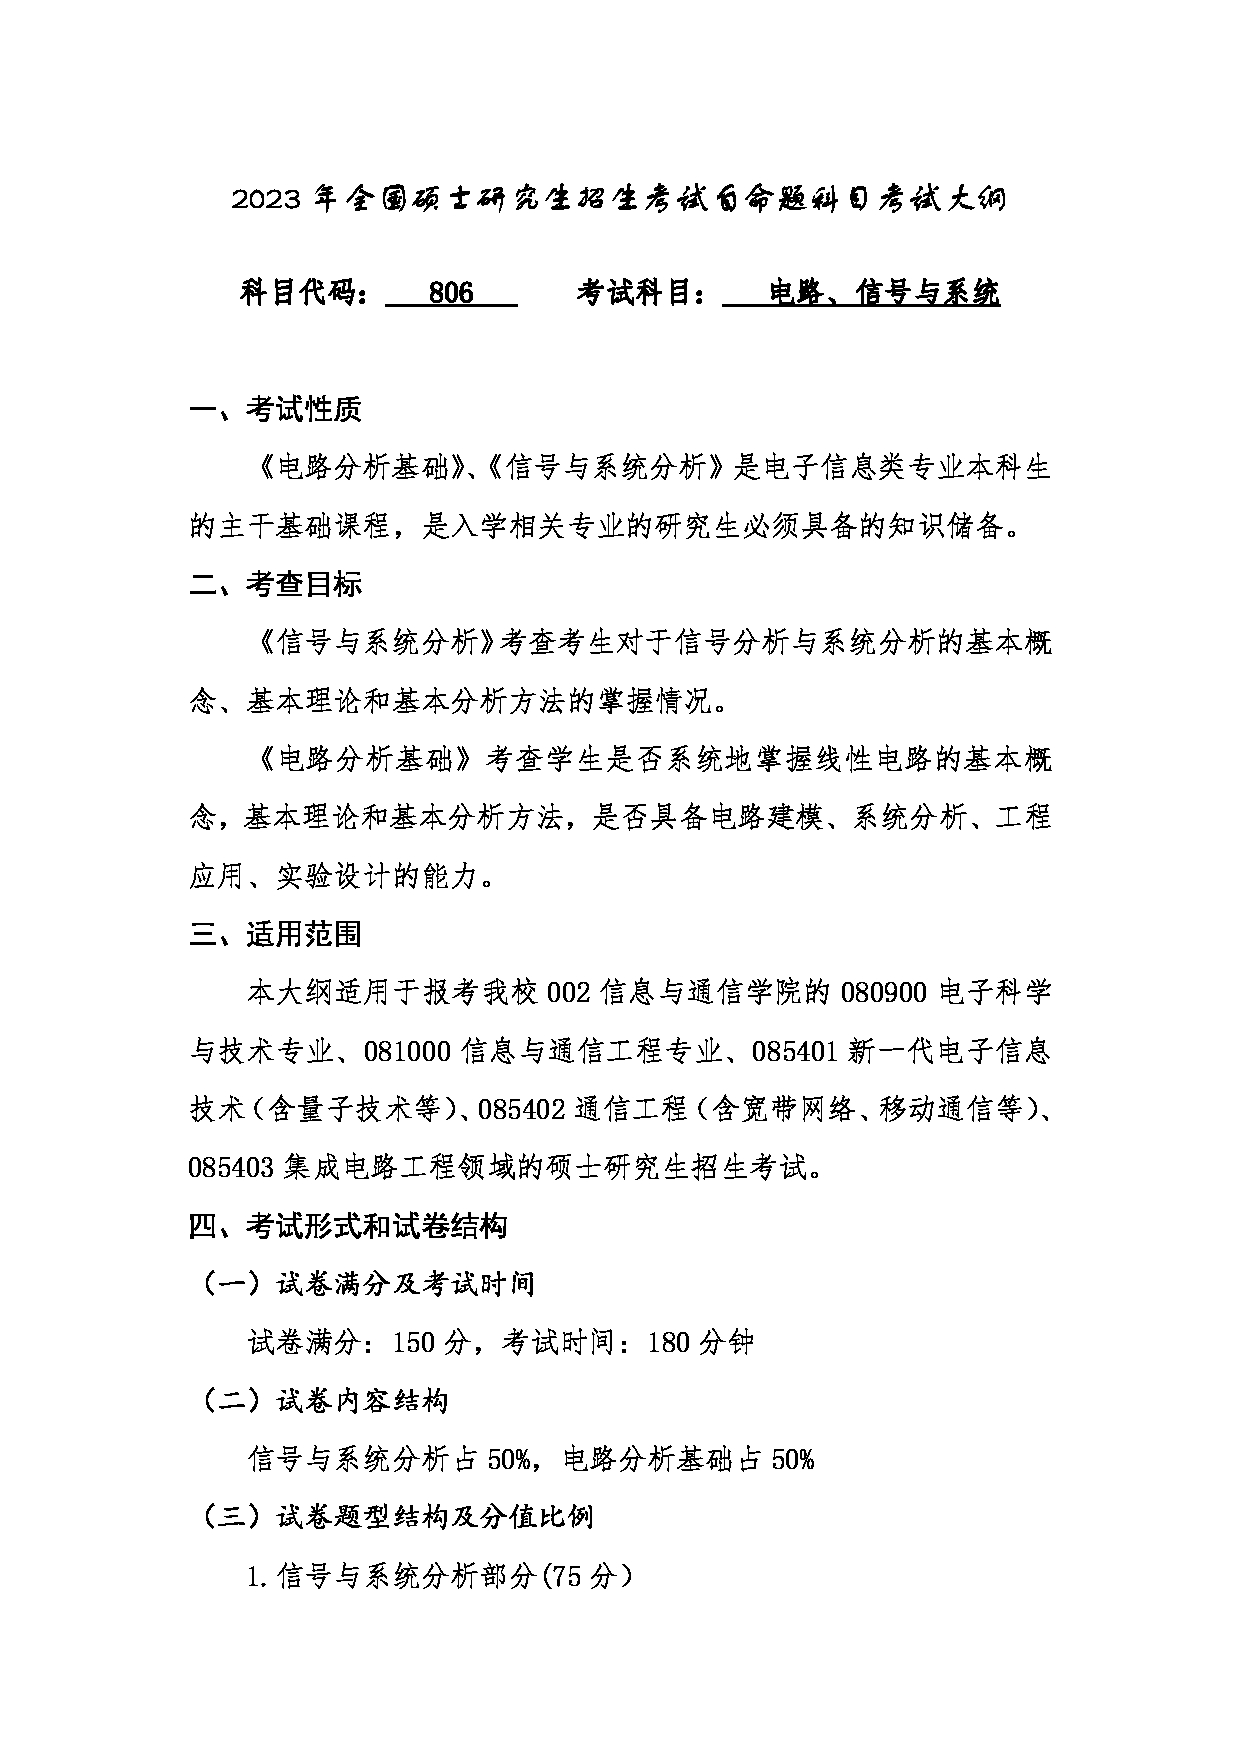 2023考研大纲：桂林电子科技大学2023年考研科目 806电路、信号与系统 考试大纲第1页